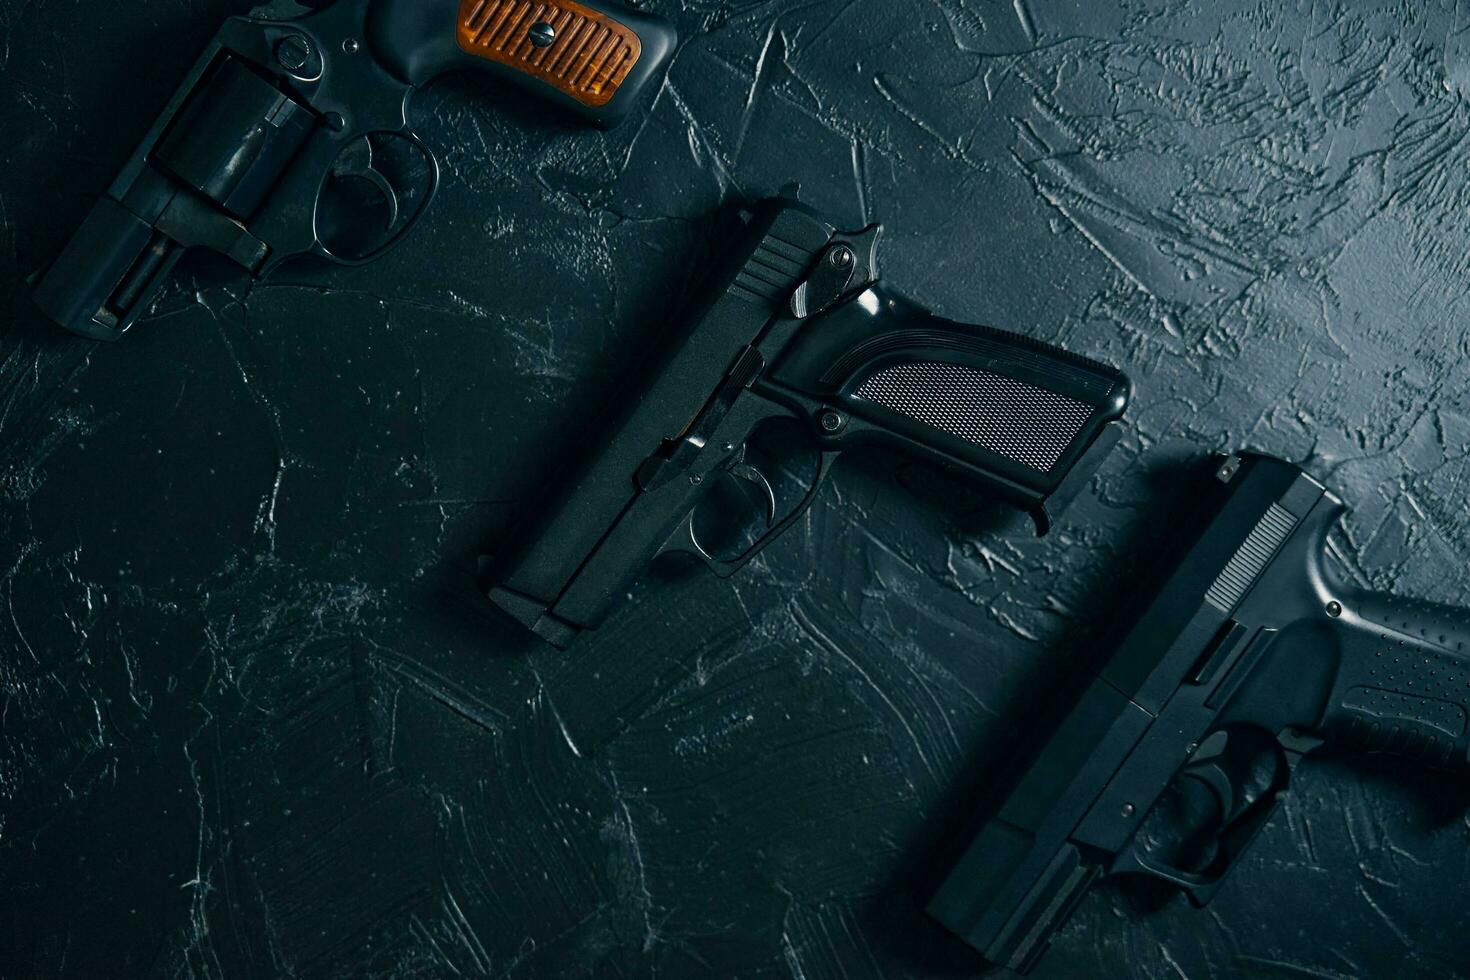 tre vapen på svart bord. foto